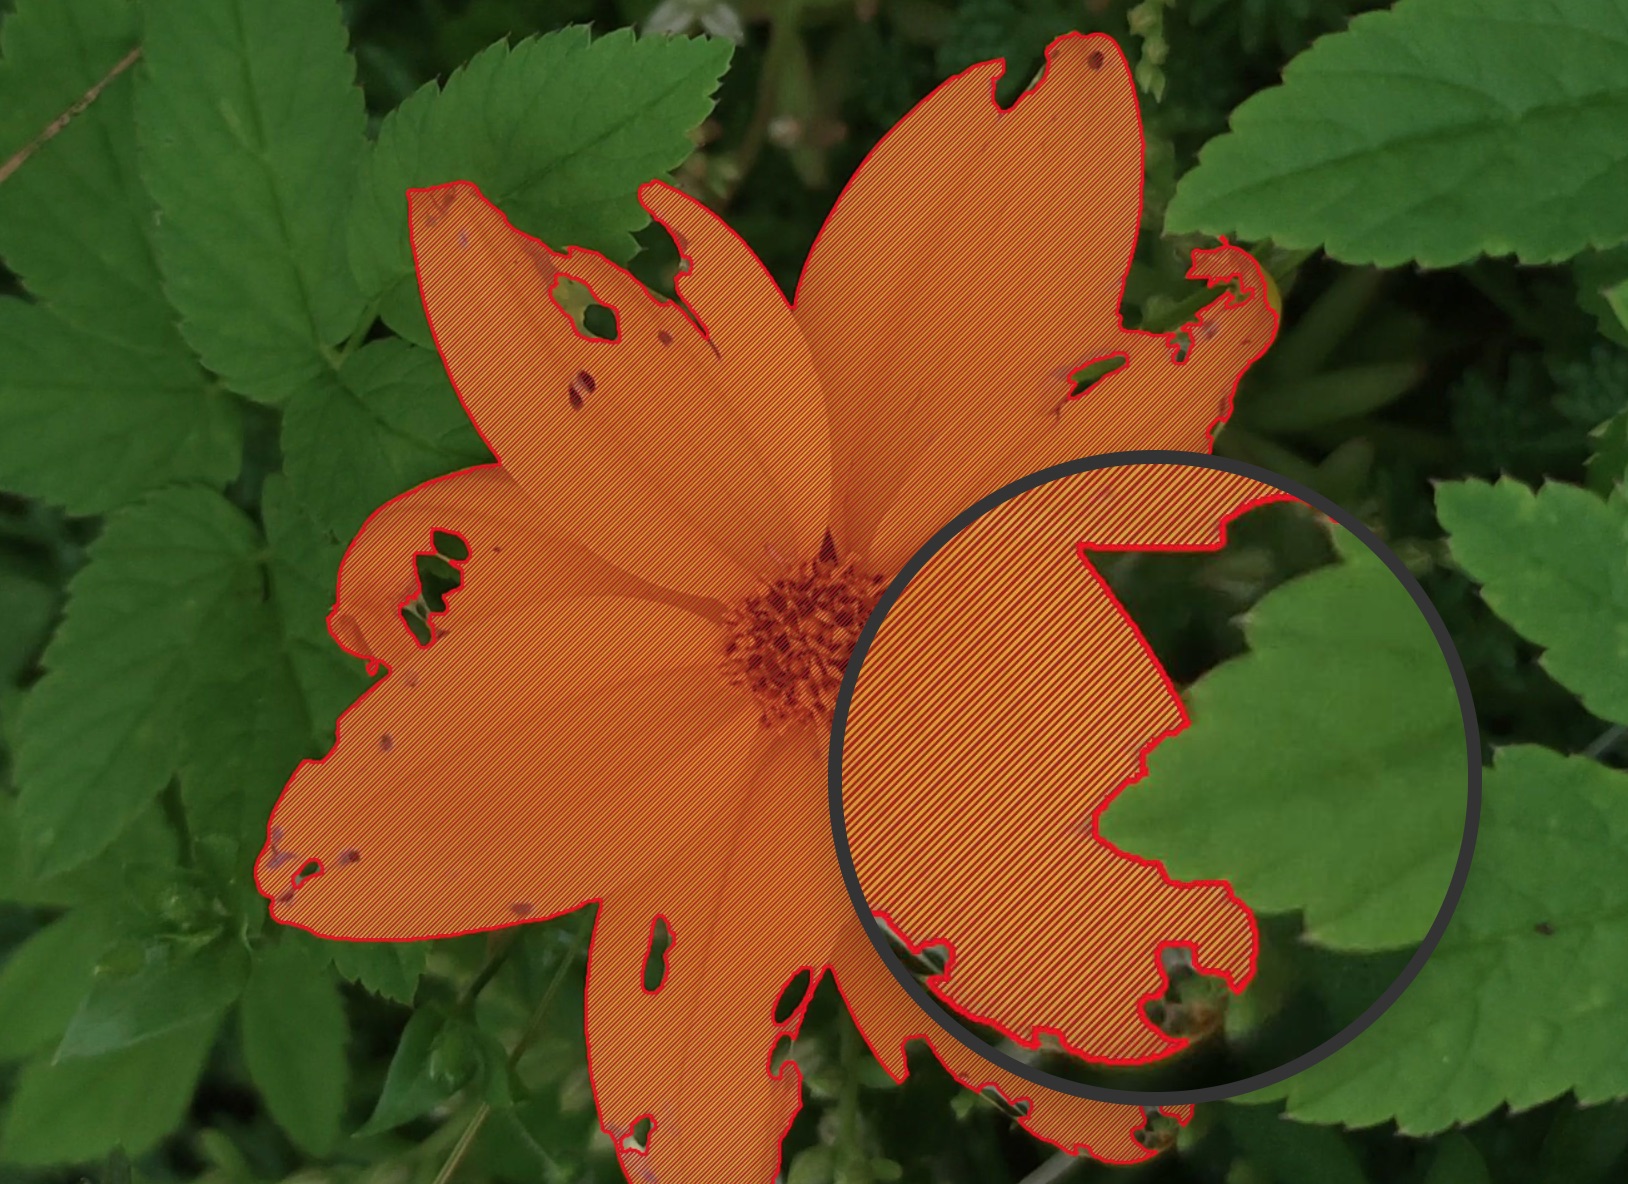 Complex flower segmentation